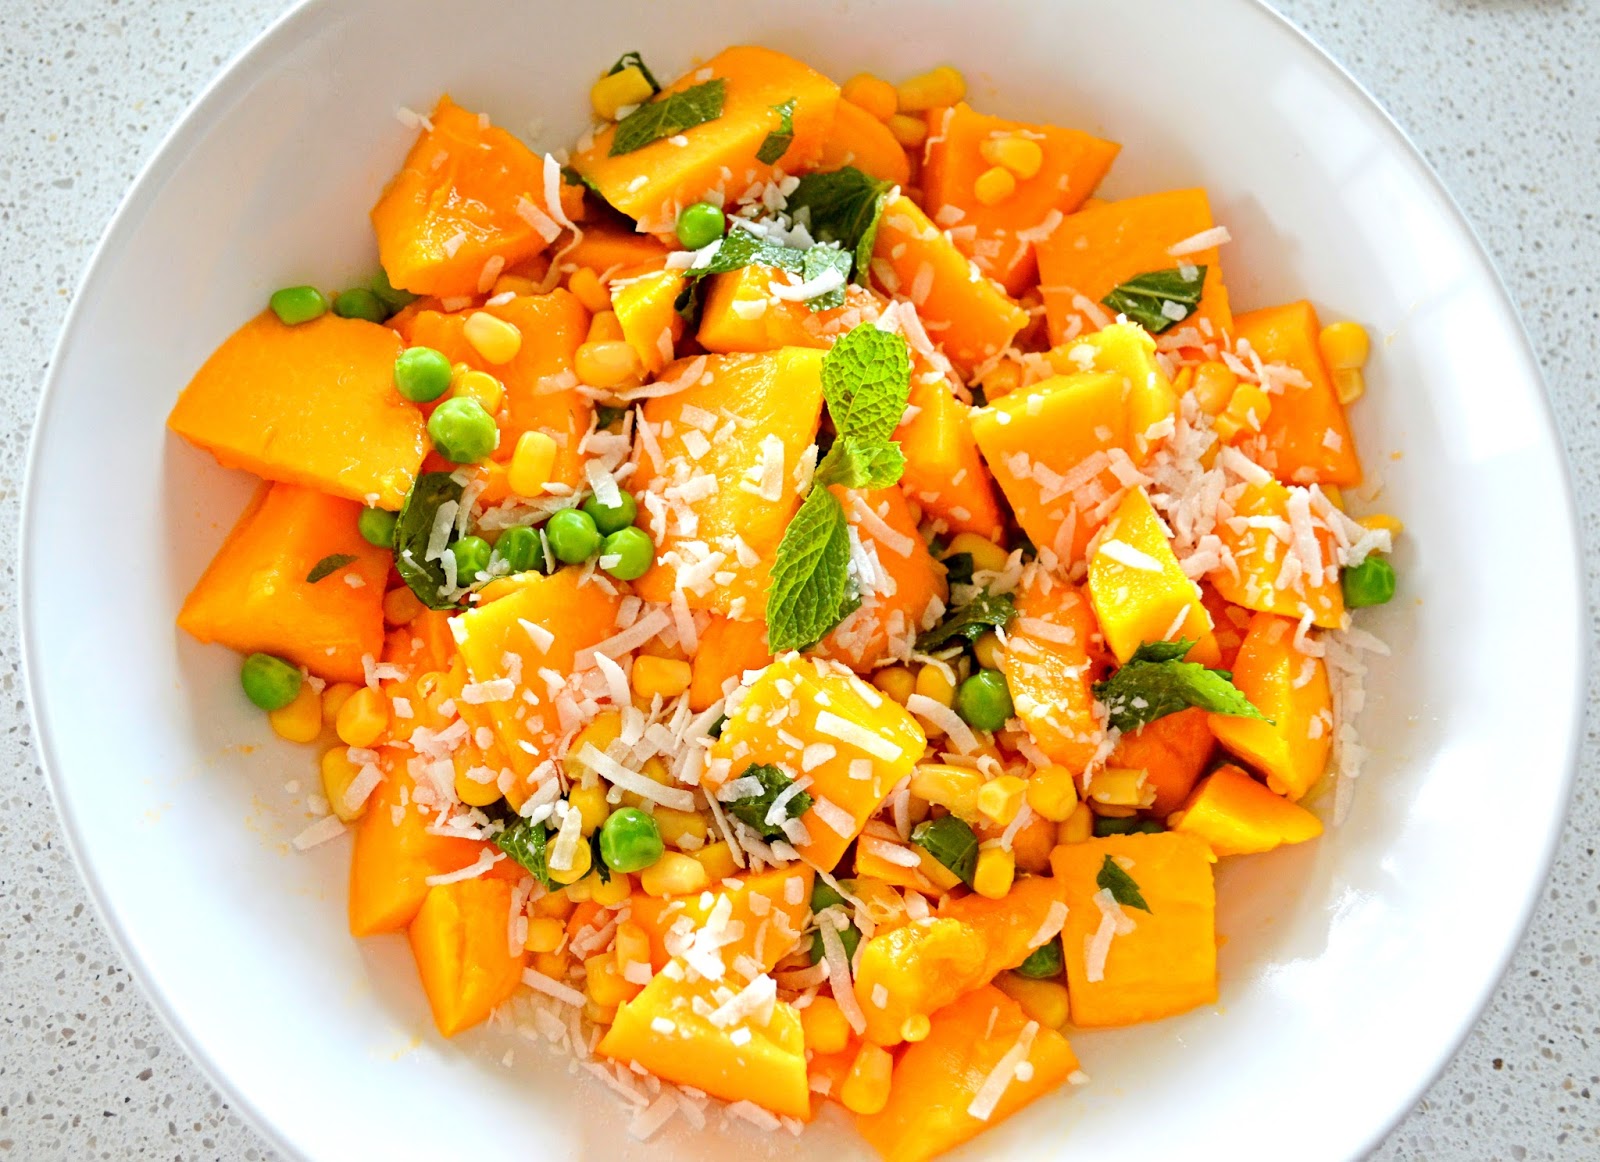 Whealthy House: Papaya and mango salad